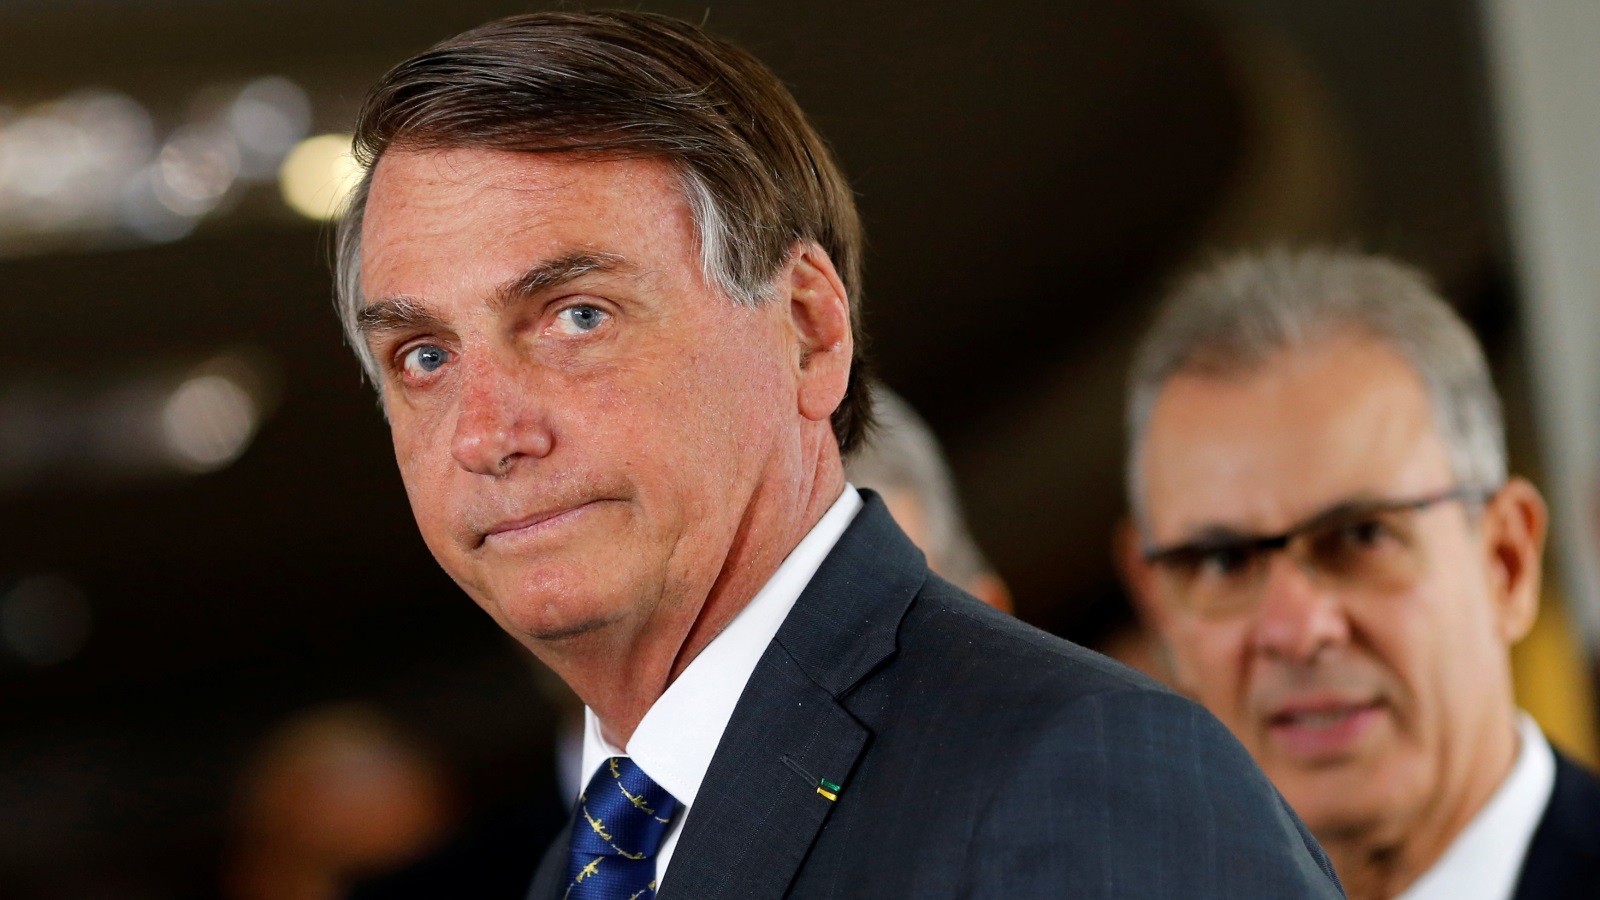 بولسونارو الذي رشح نفسه للرئاسة البرازيلية عام 2018 صوّت على مشرع لإقالة أول رئيسة للبرازيل ديلما روسيف (رويترز)